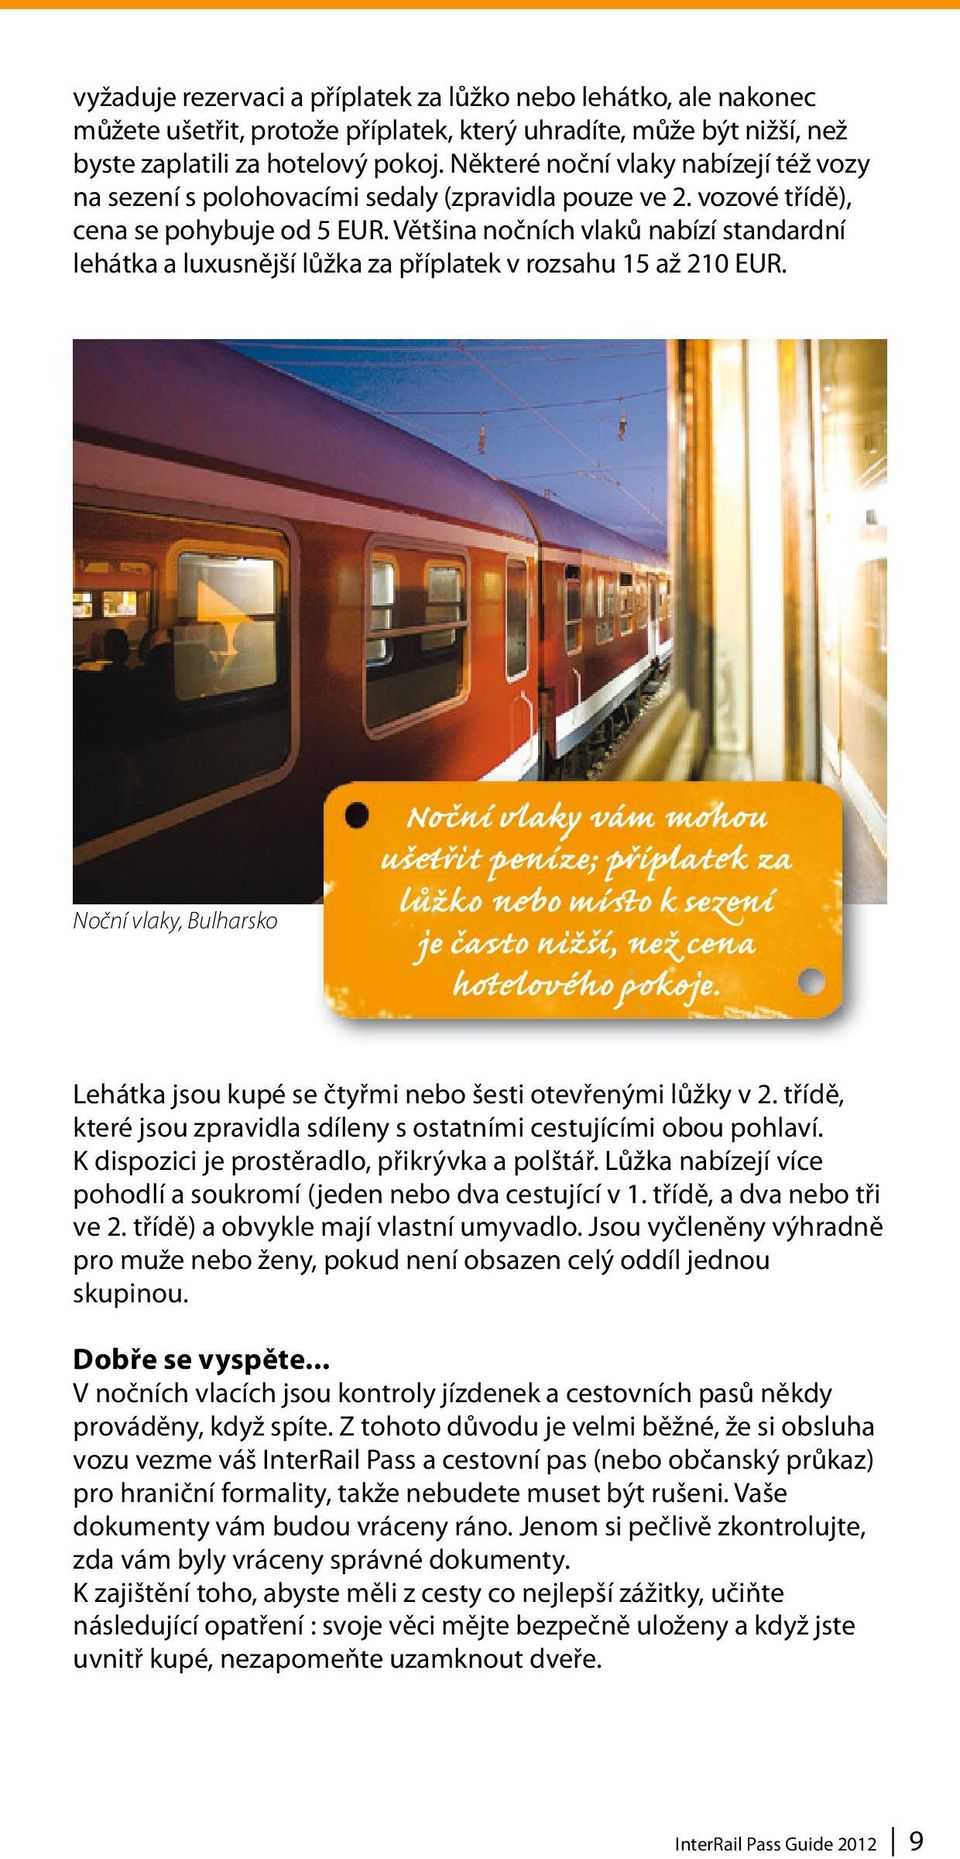 Většina nočních vlaků nabízí standardní lehátka a luxusnější lůžka za příplatek v rozsahu 15 až 210 EUR.